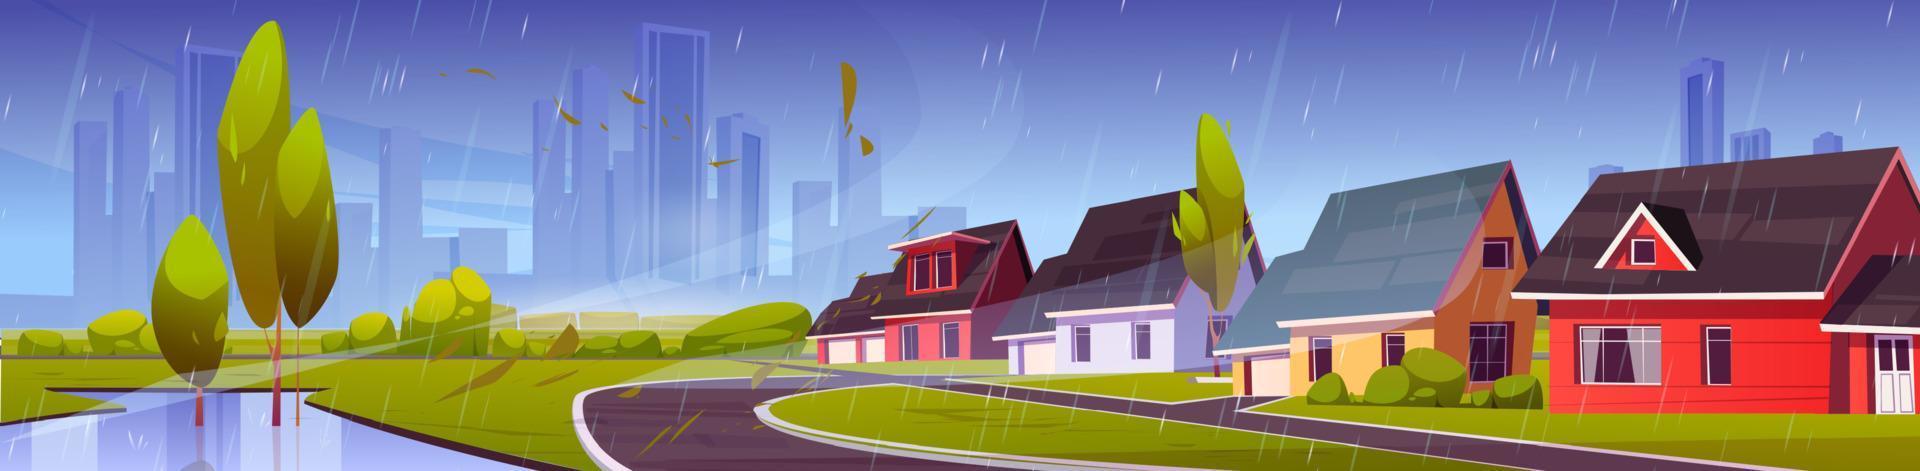 distrito suburbano con casas bajo la lluvia vector